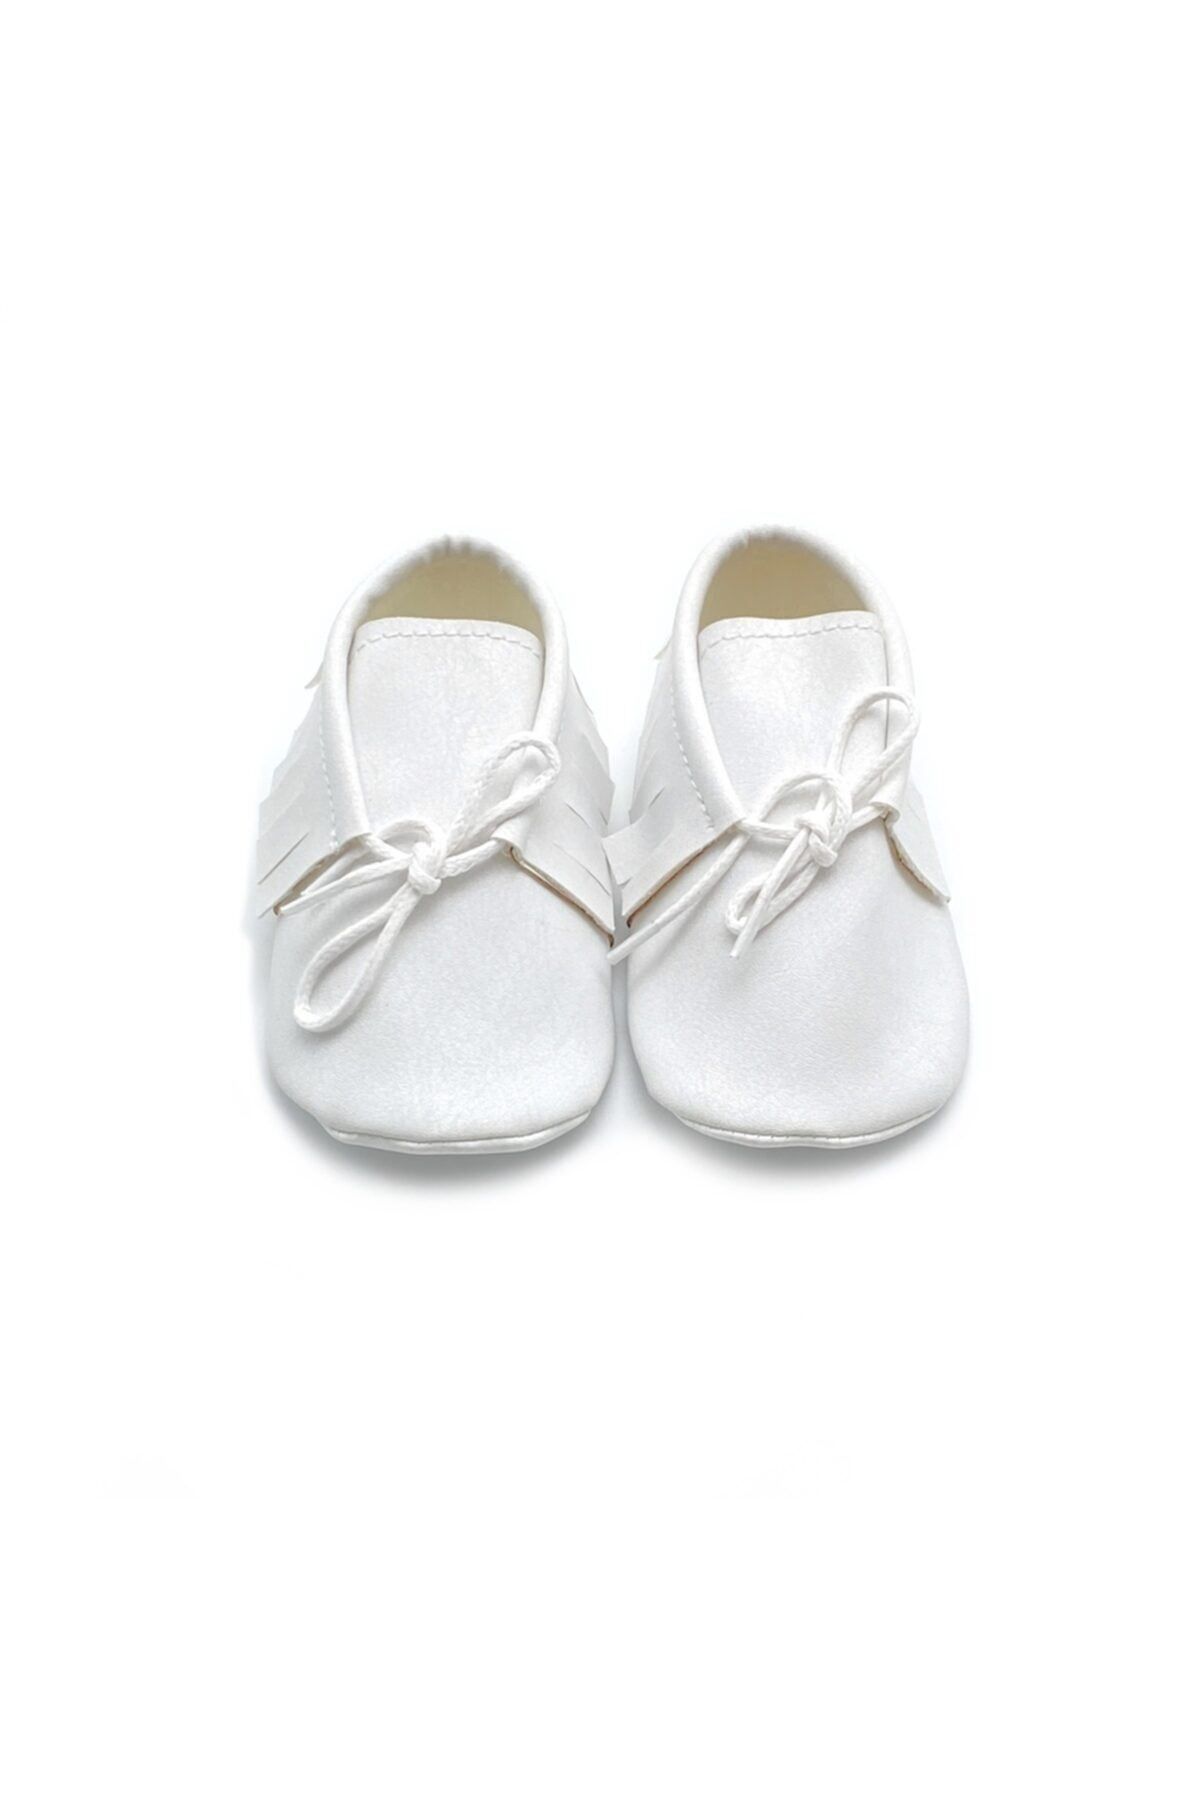 TUĞRA CENTER Baby Tuğra El Yapımı Bağcıklı Makosen Patik Bebek Ayakkabı - Beyaz